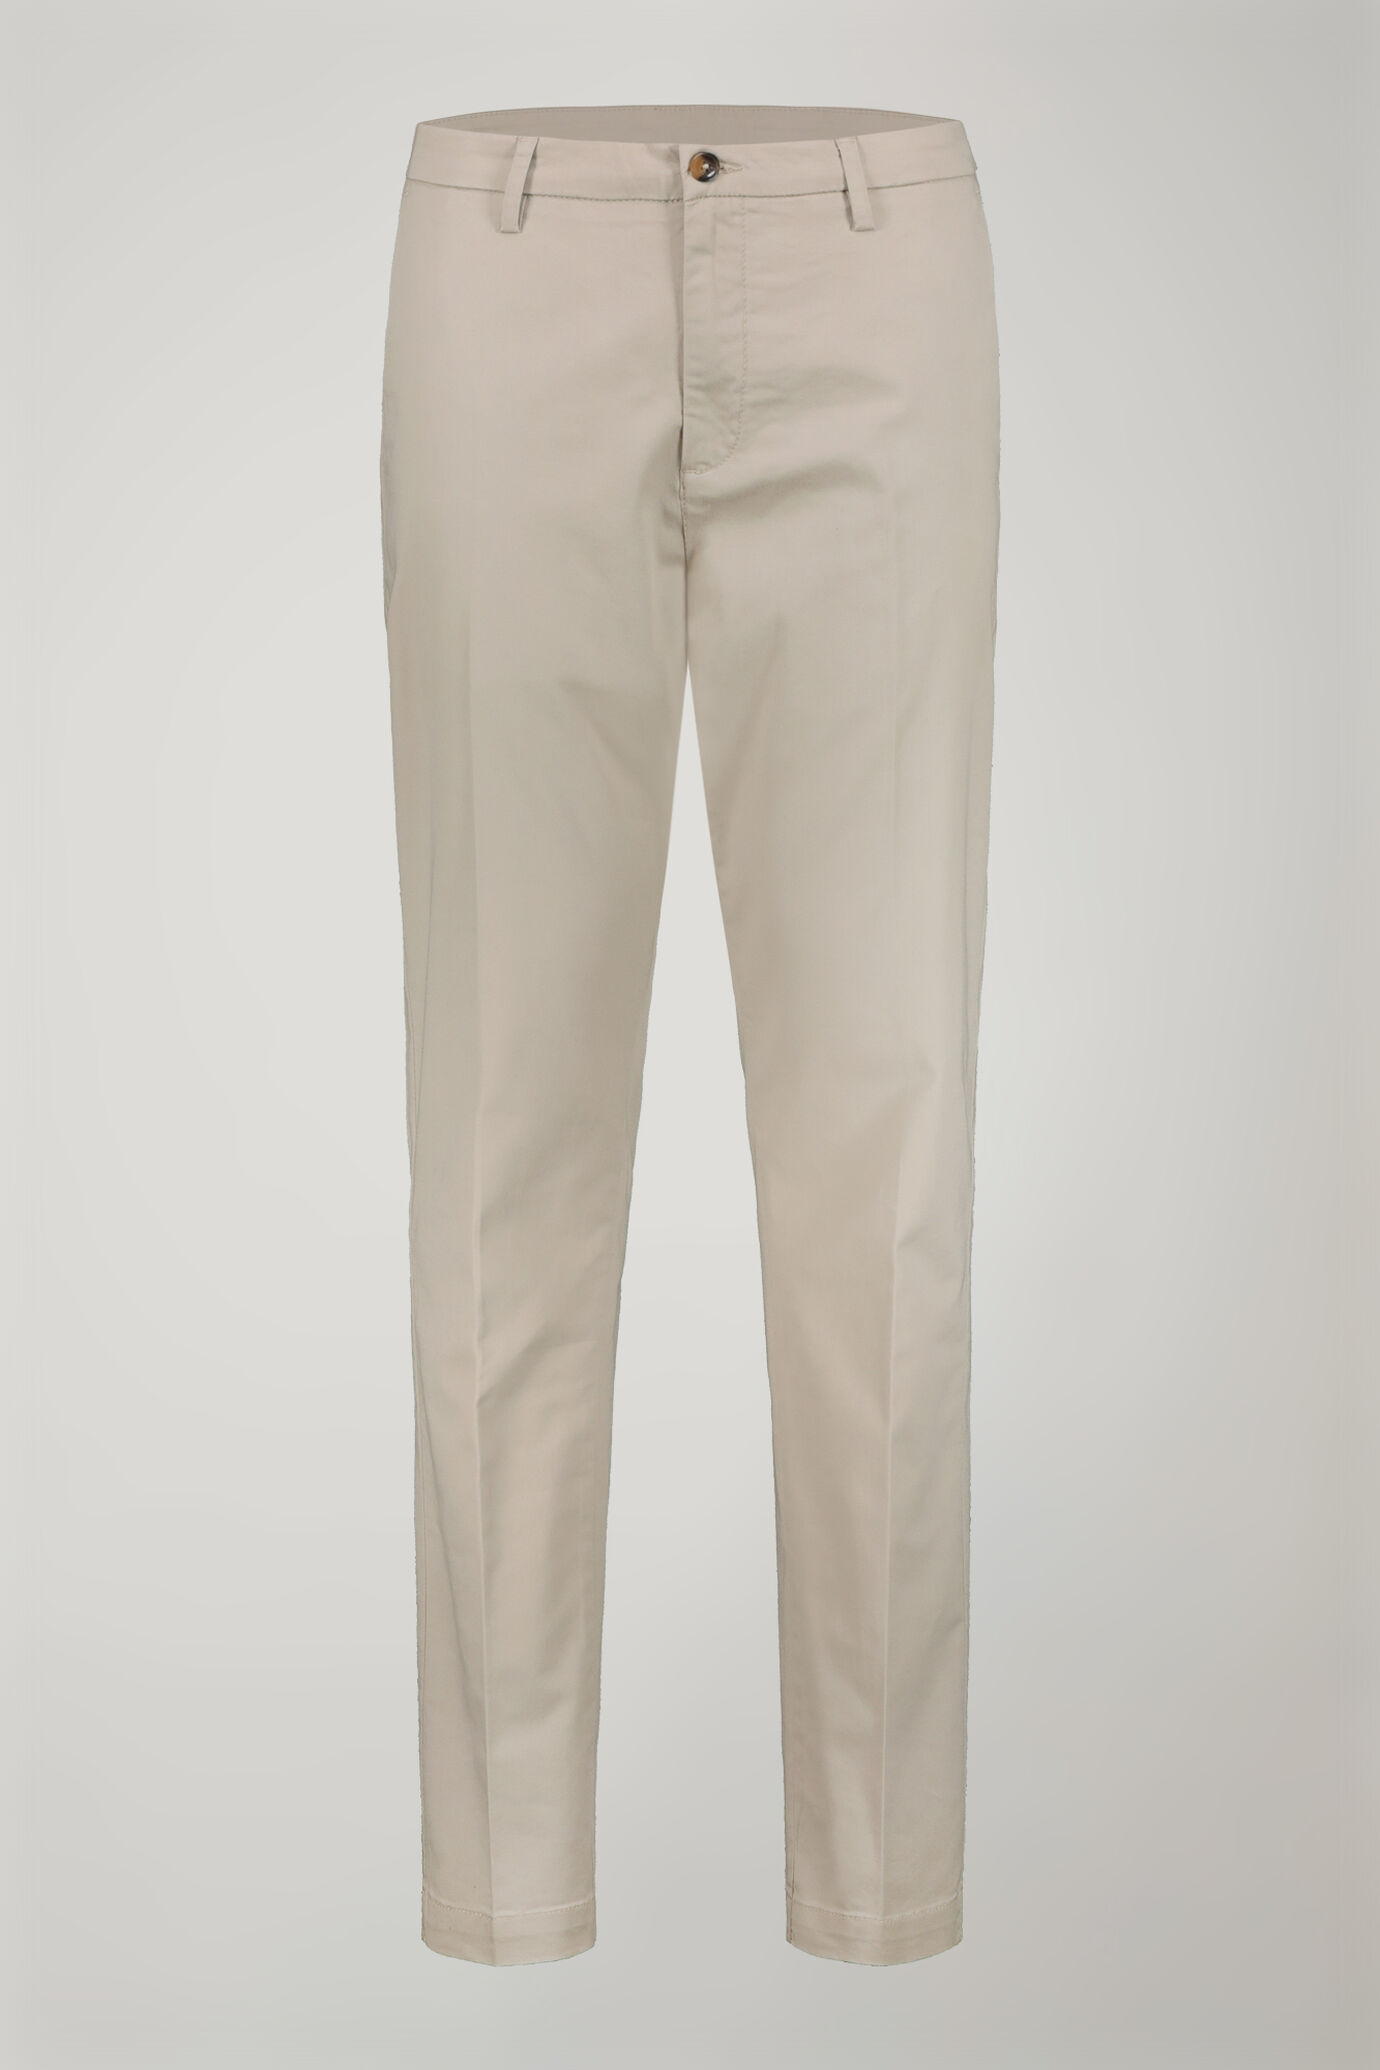 Pantalone chino uomo classico costruzione twill elasticizzato perfect fit image number 4